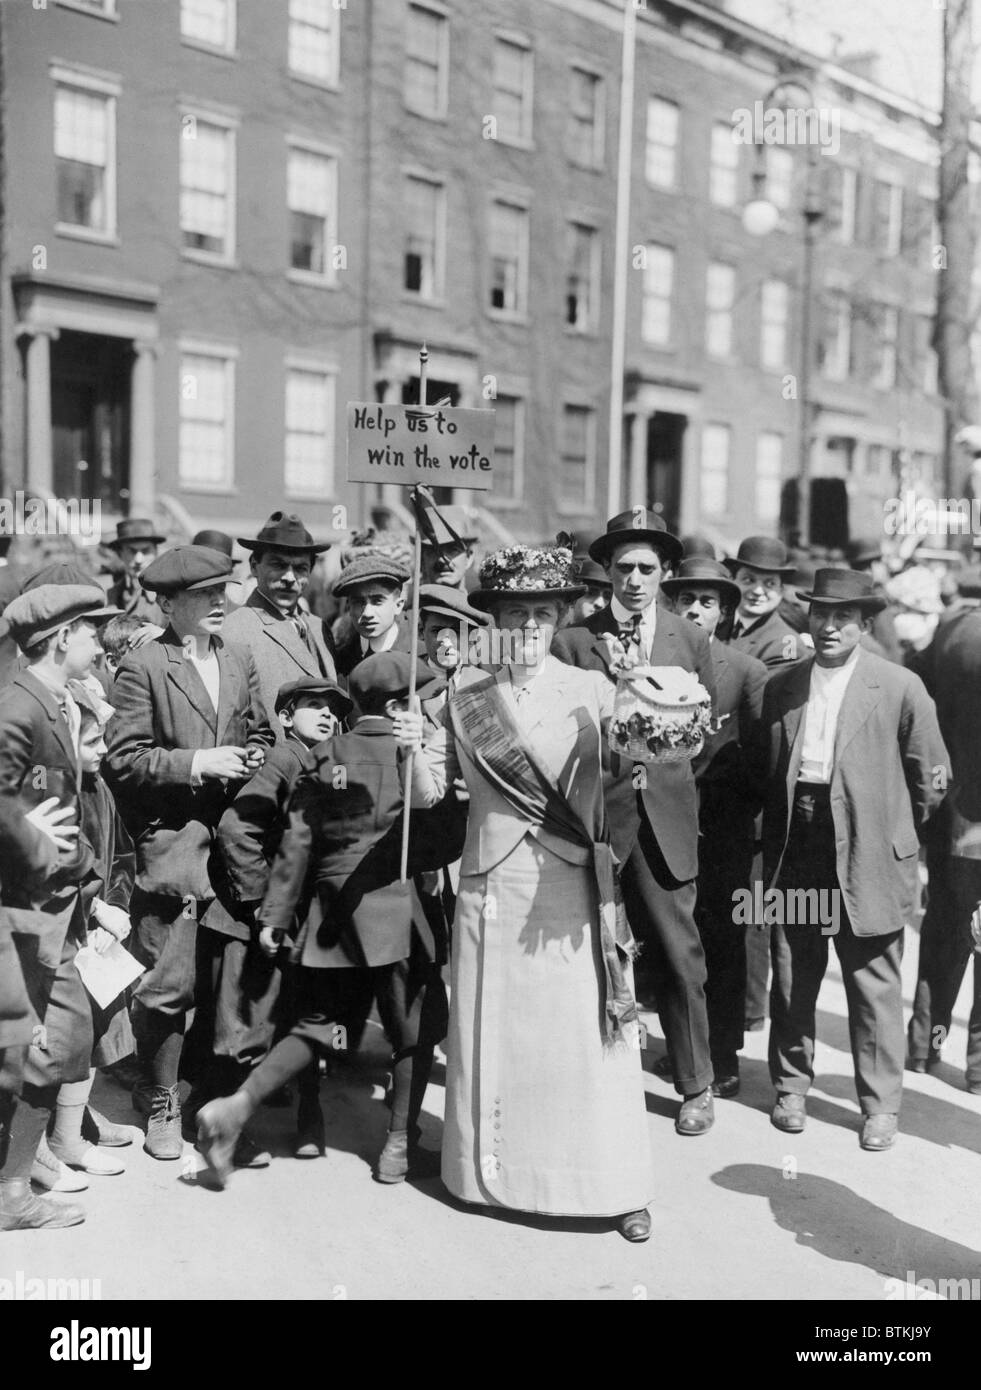 Le donne identificate come la sig.ra Suffern, è circondato da una folla di uomini e ragazzi, mentre lei detiene un banner in donne suffragist parade "Aiutaci a vincere la votazione." 1914. Foto Stock